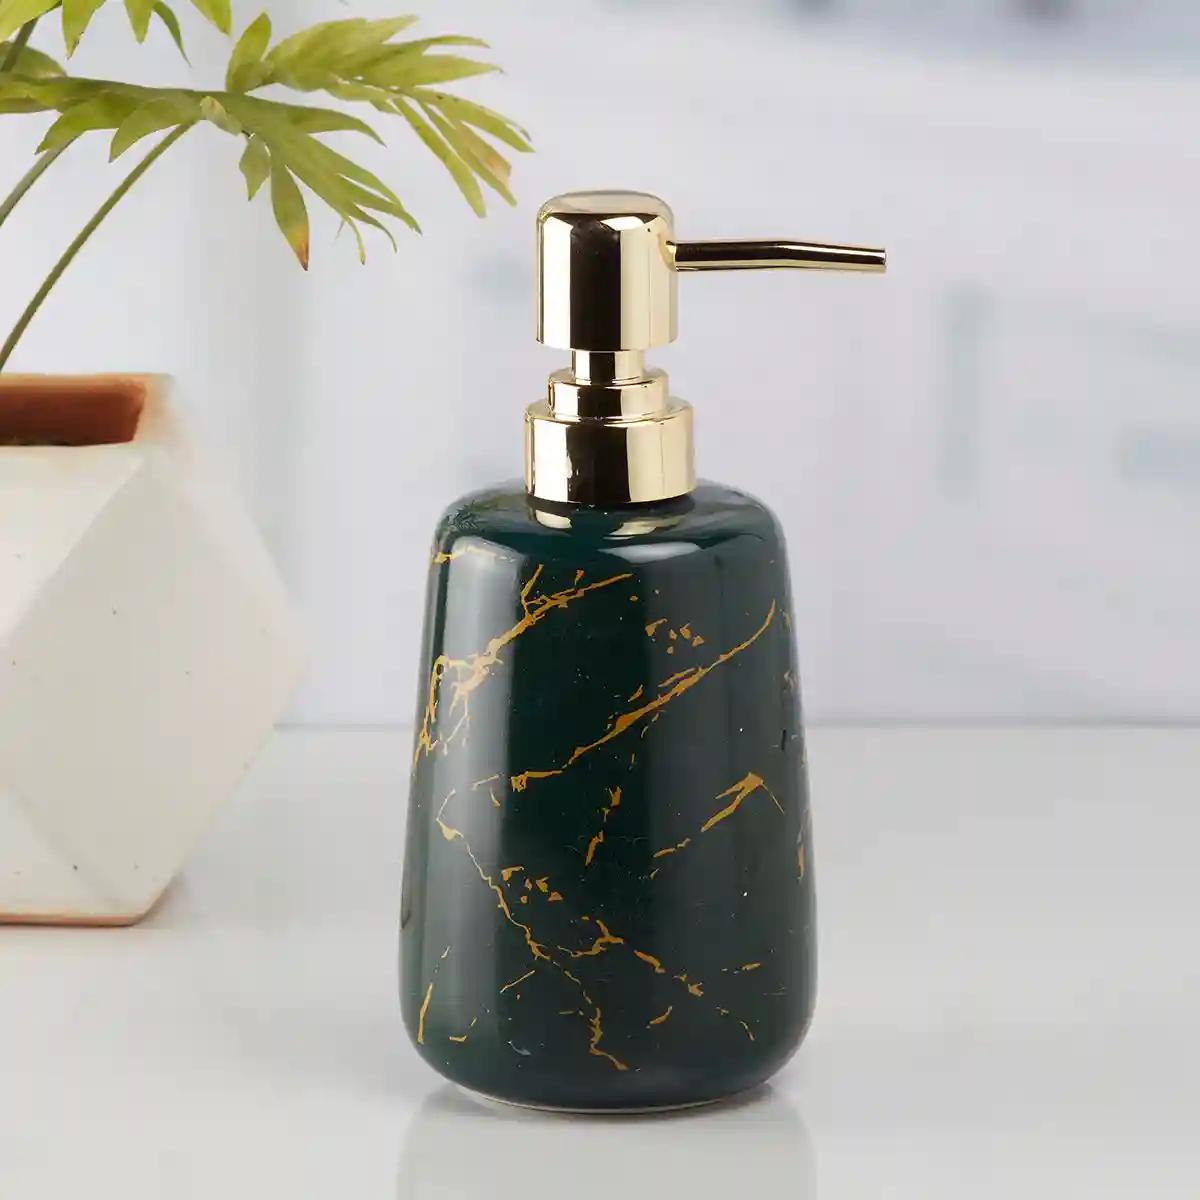 Kookee Ceramic Soap Dispenser for Bathroom handwash, refillable pump bottle for Kitchen hand wash basin, Set of 1 - Green (10200)